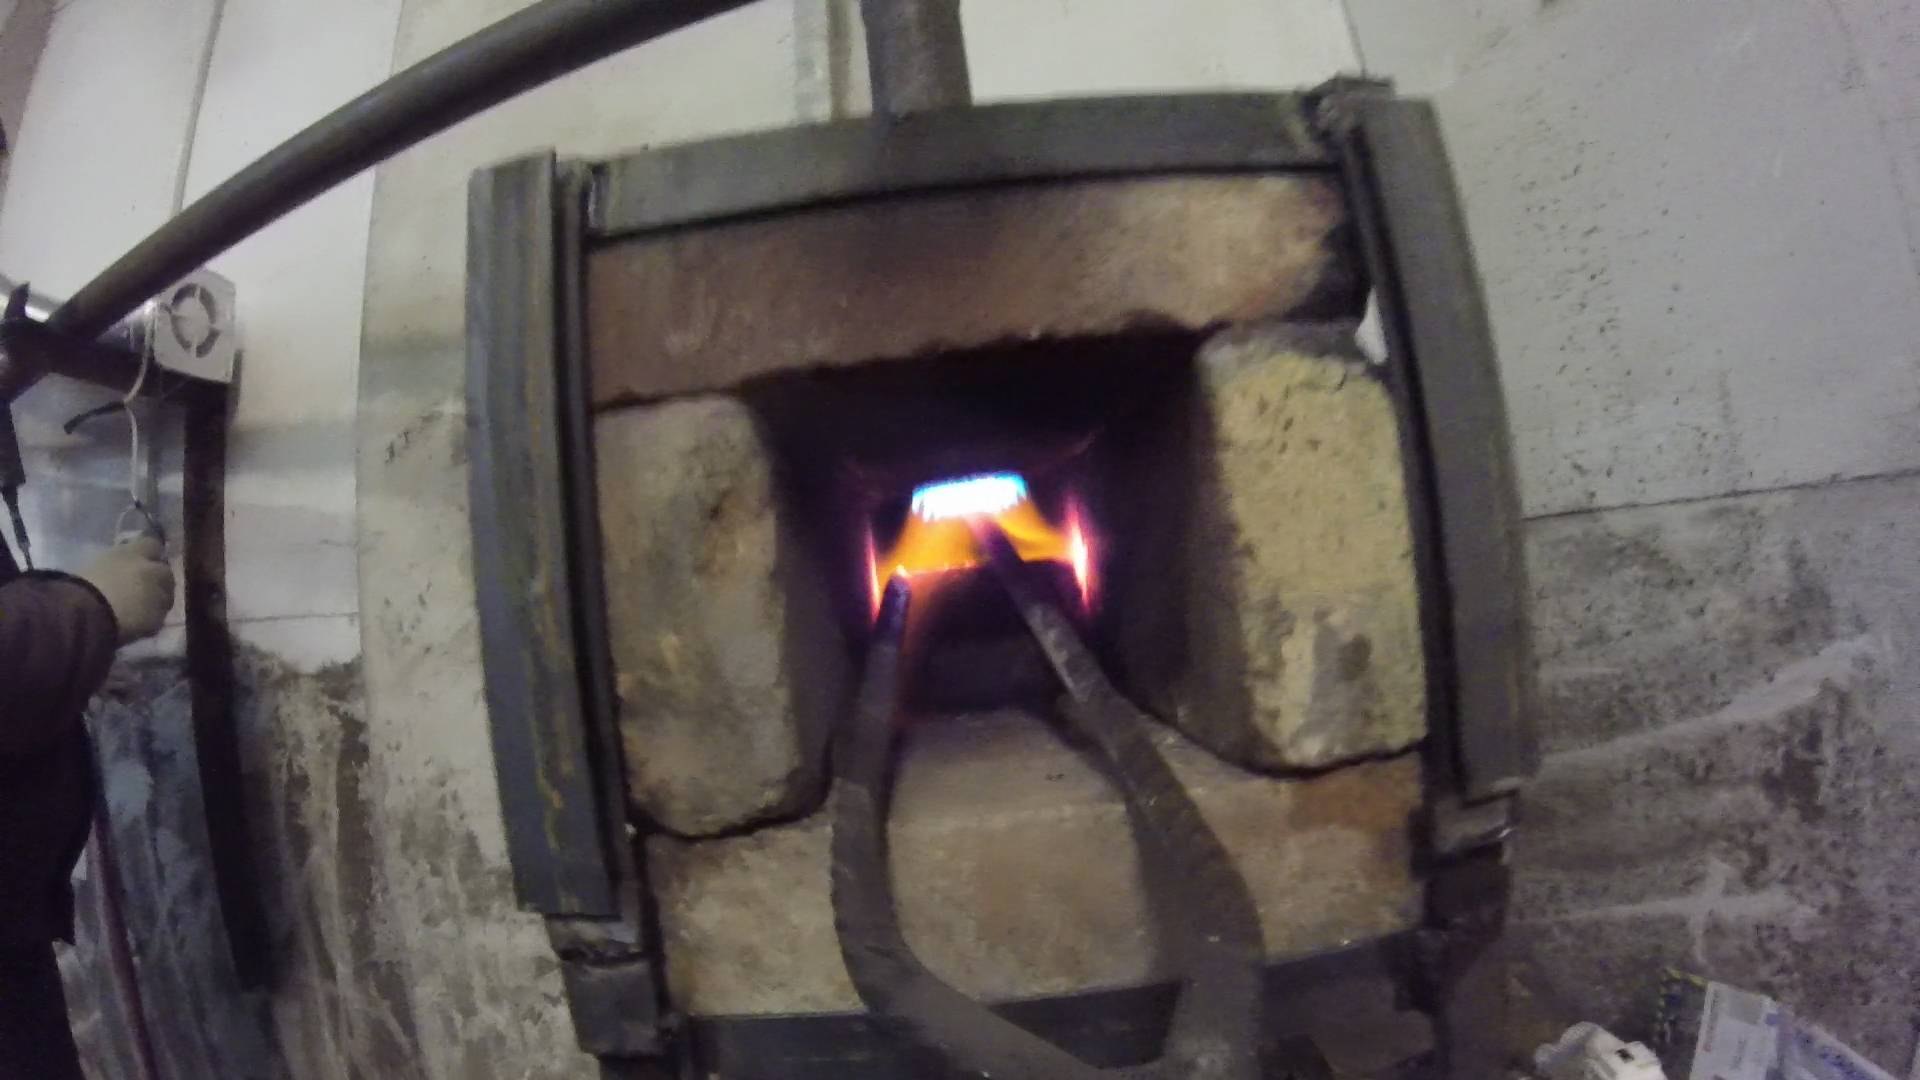 Пламя горна. Восстановительное пламя в горне. Газовый горн, футеровка керамоволокном. Струйная печь горелка. Газовый горн дверка на педали.